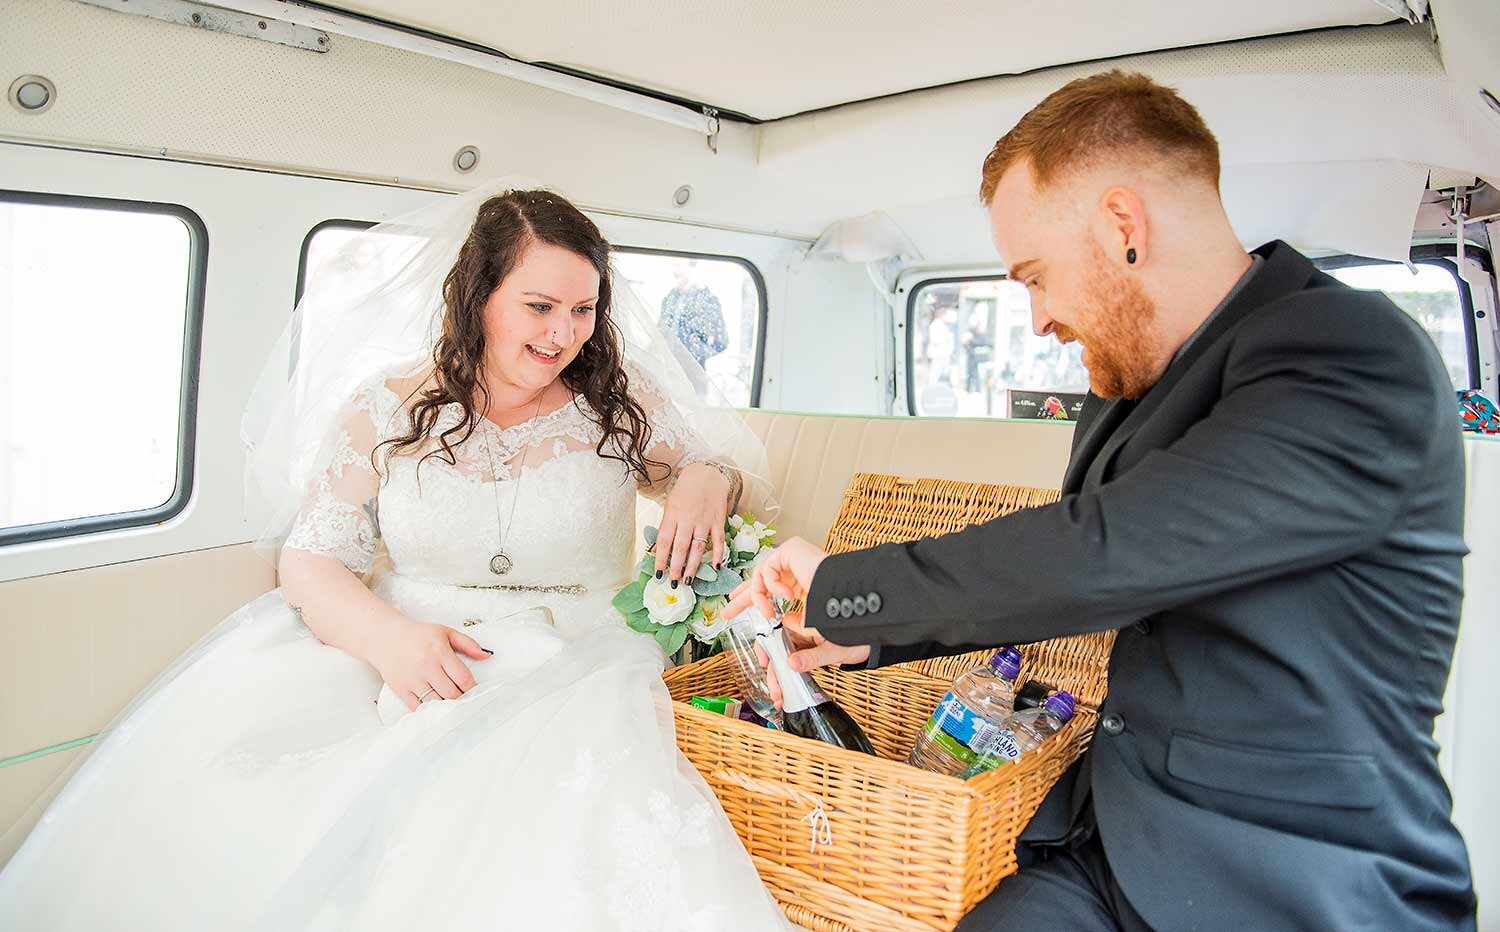 Bride and groom celebrating drinks in wedding van